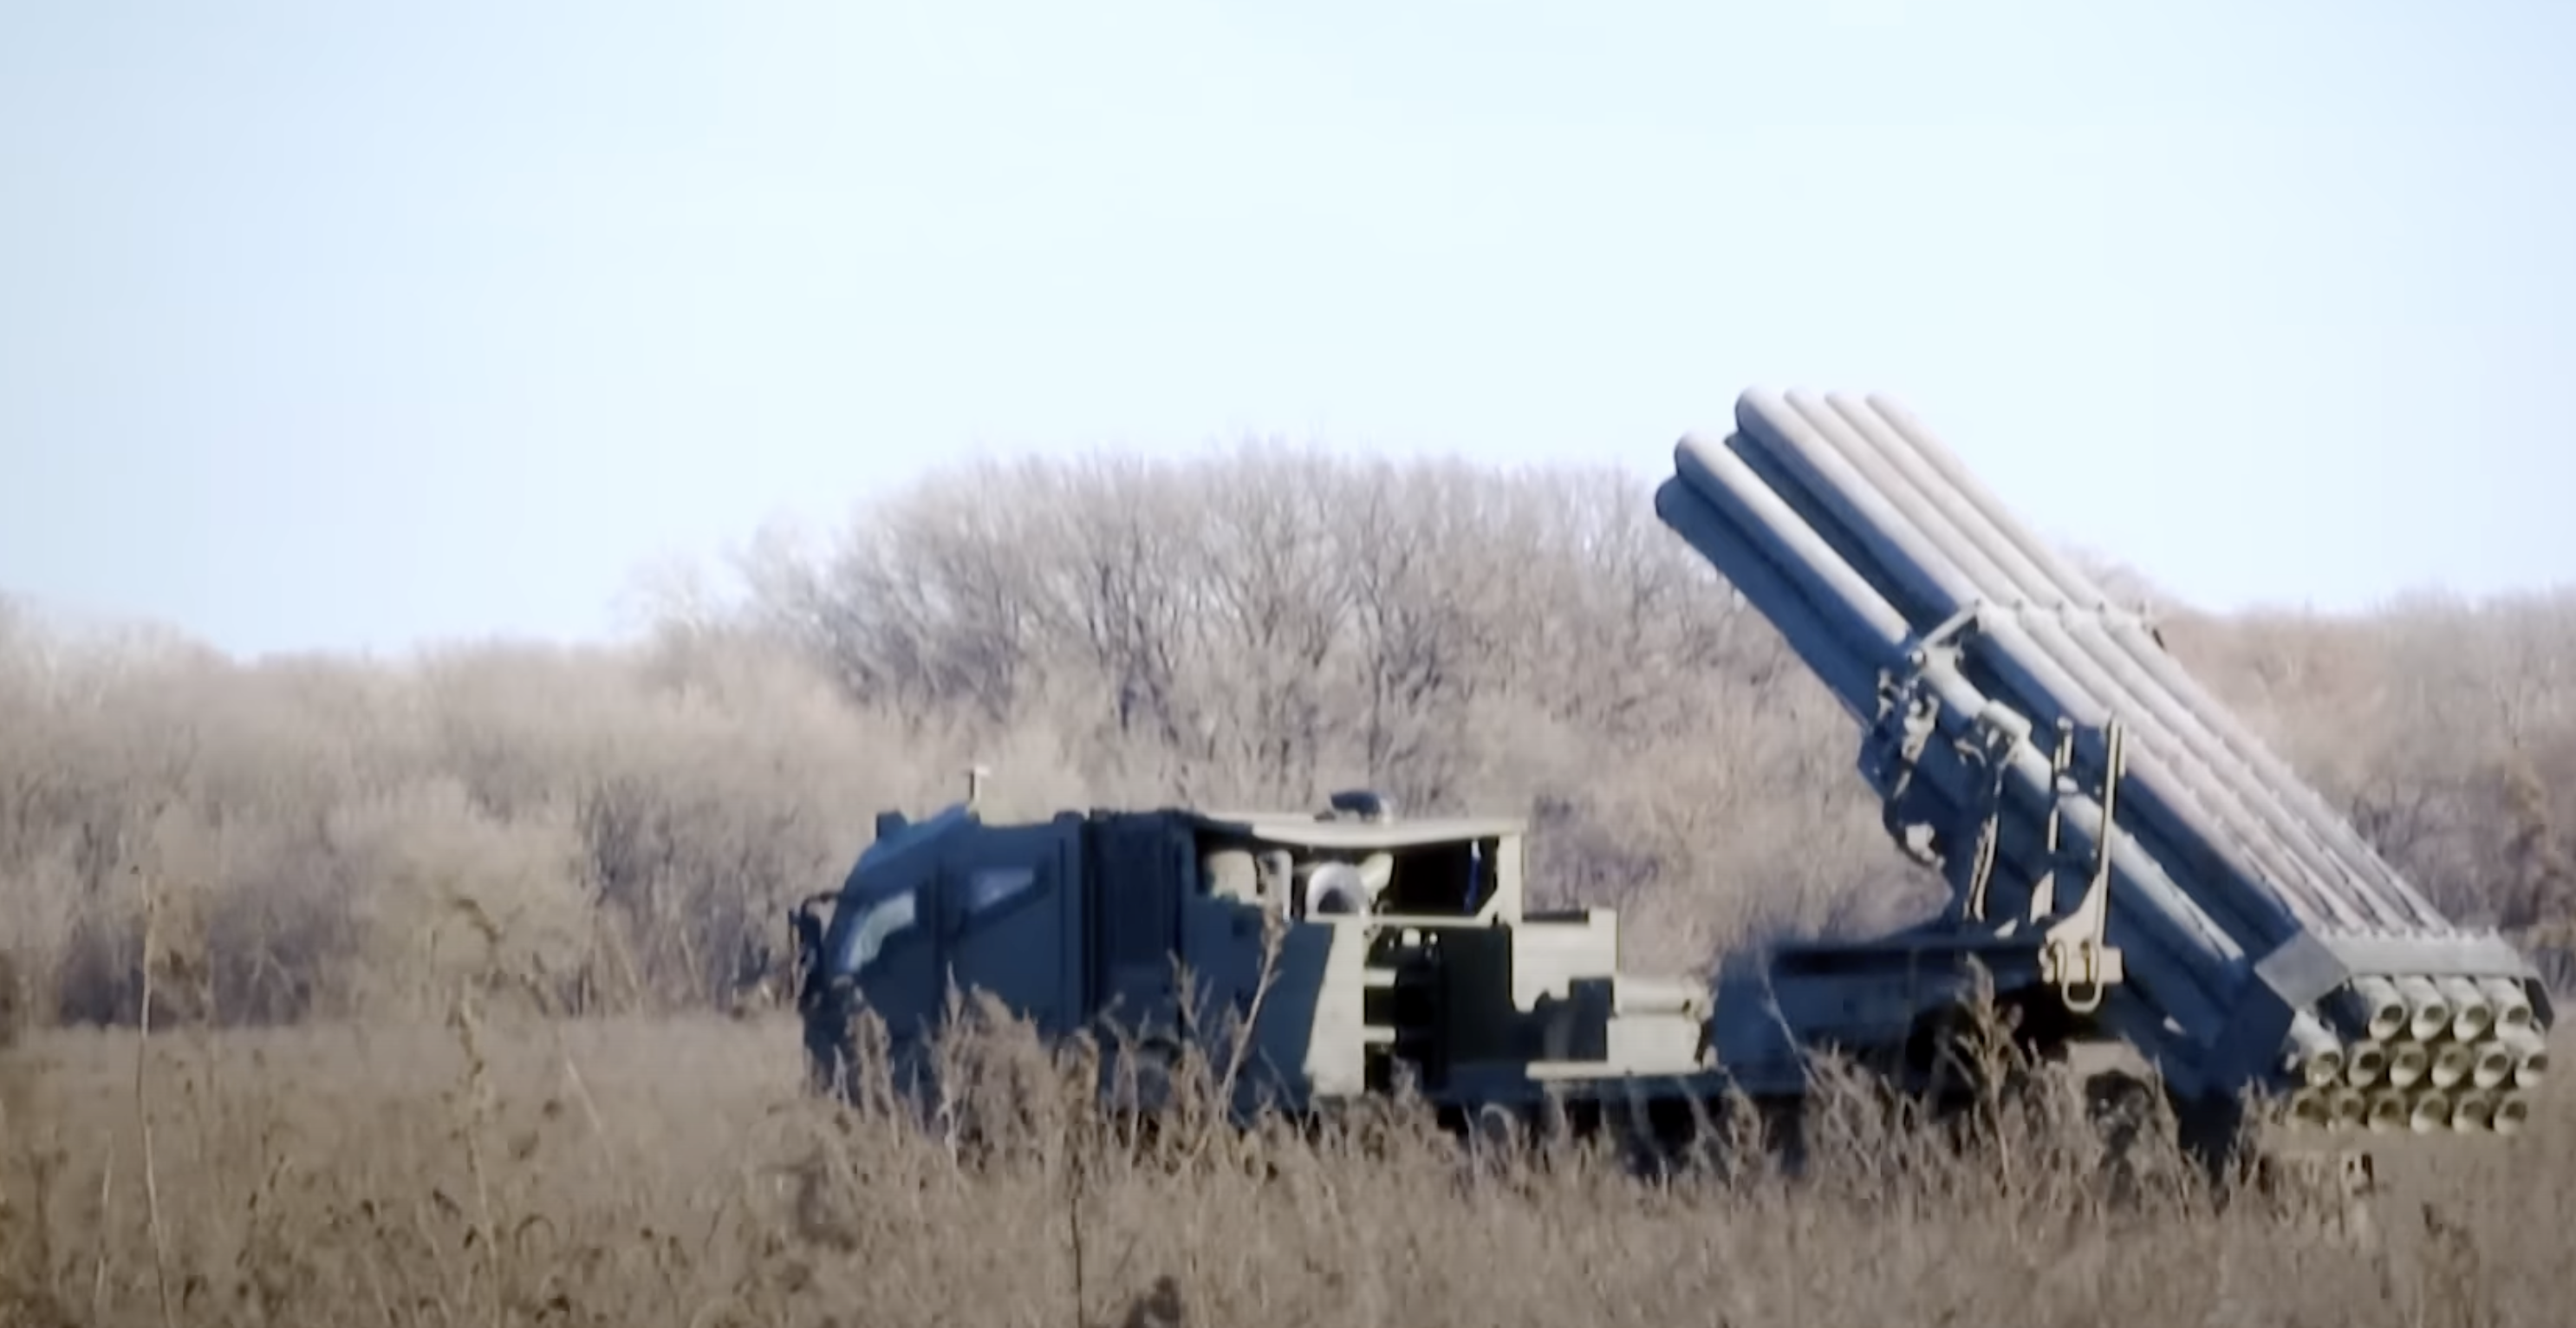 Missile non identificato caduto in Moldavia, indagini in corso